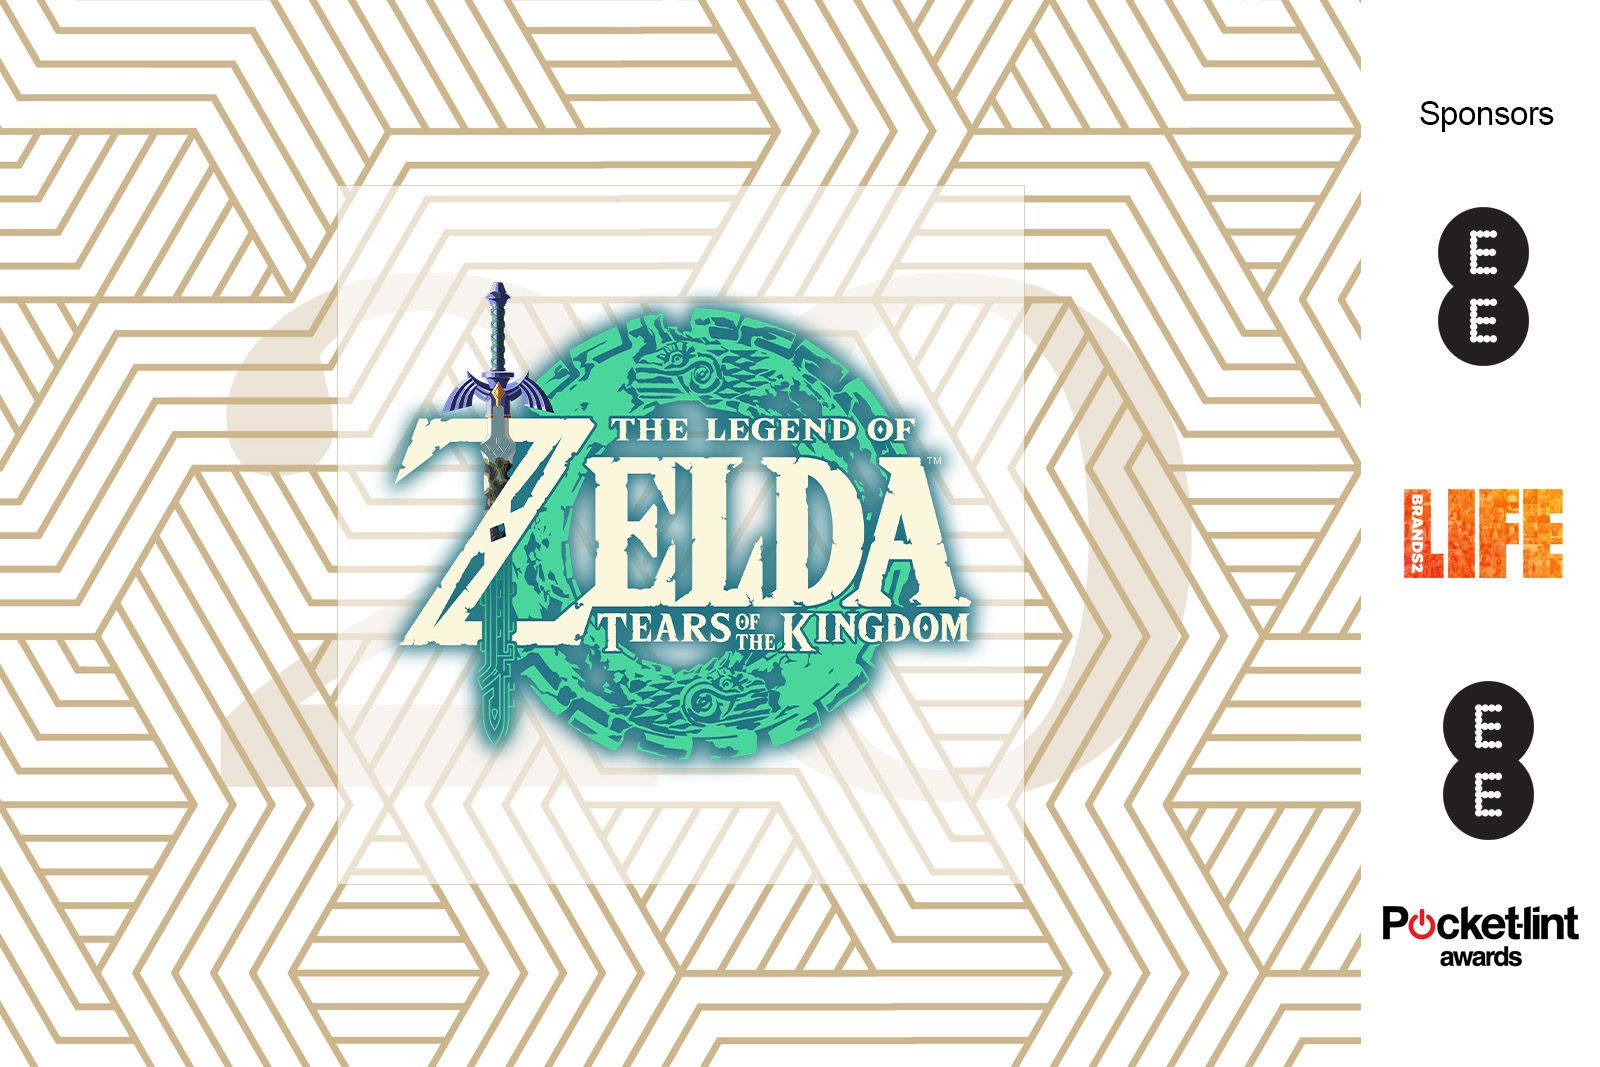 Zelda award winner